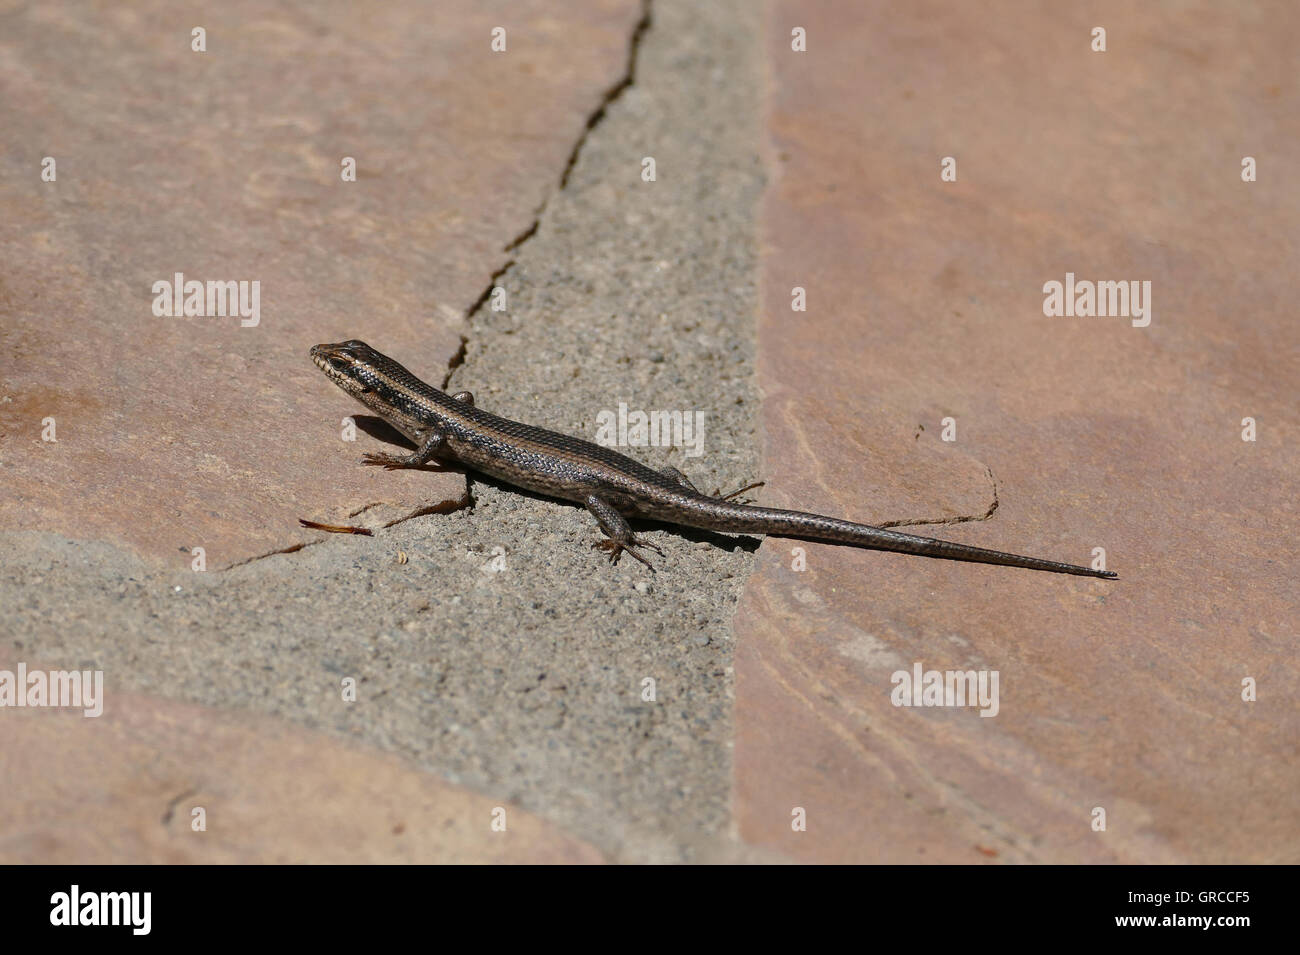 Lizard, Namibia Stock Photo